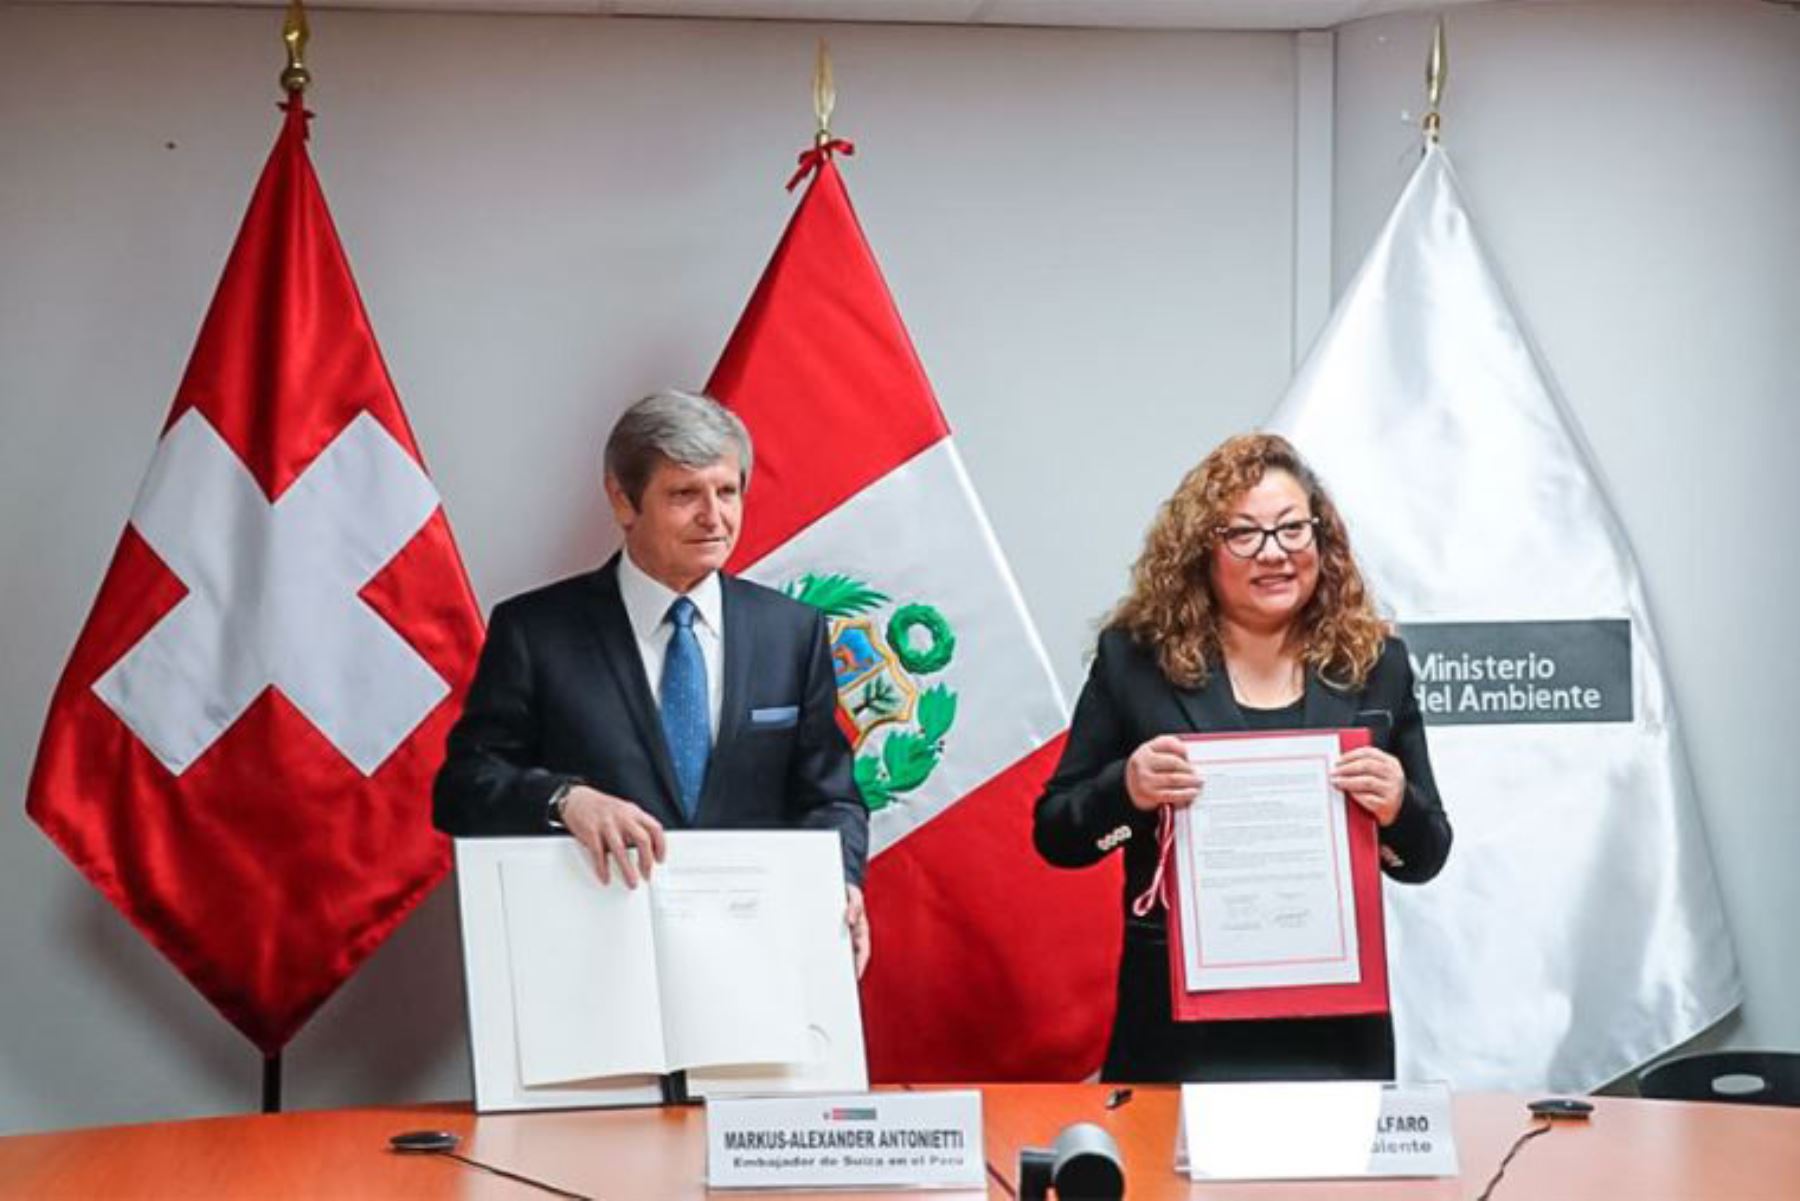 Environment Minister Kirla Echegaray and Swiss Ambassador to Peru Markus-Alexander Antonietti.